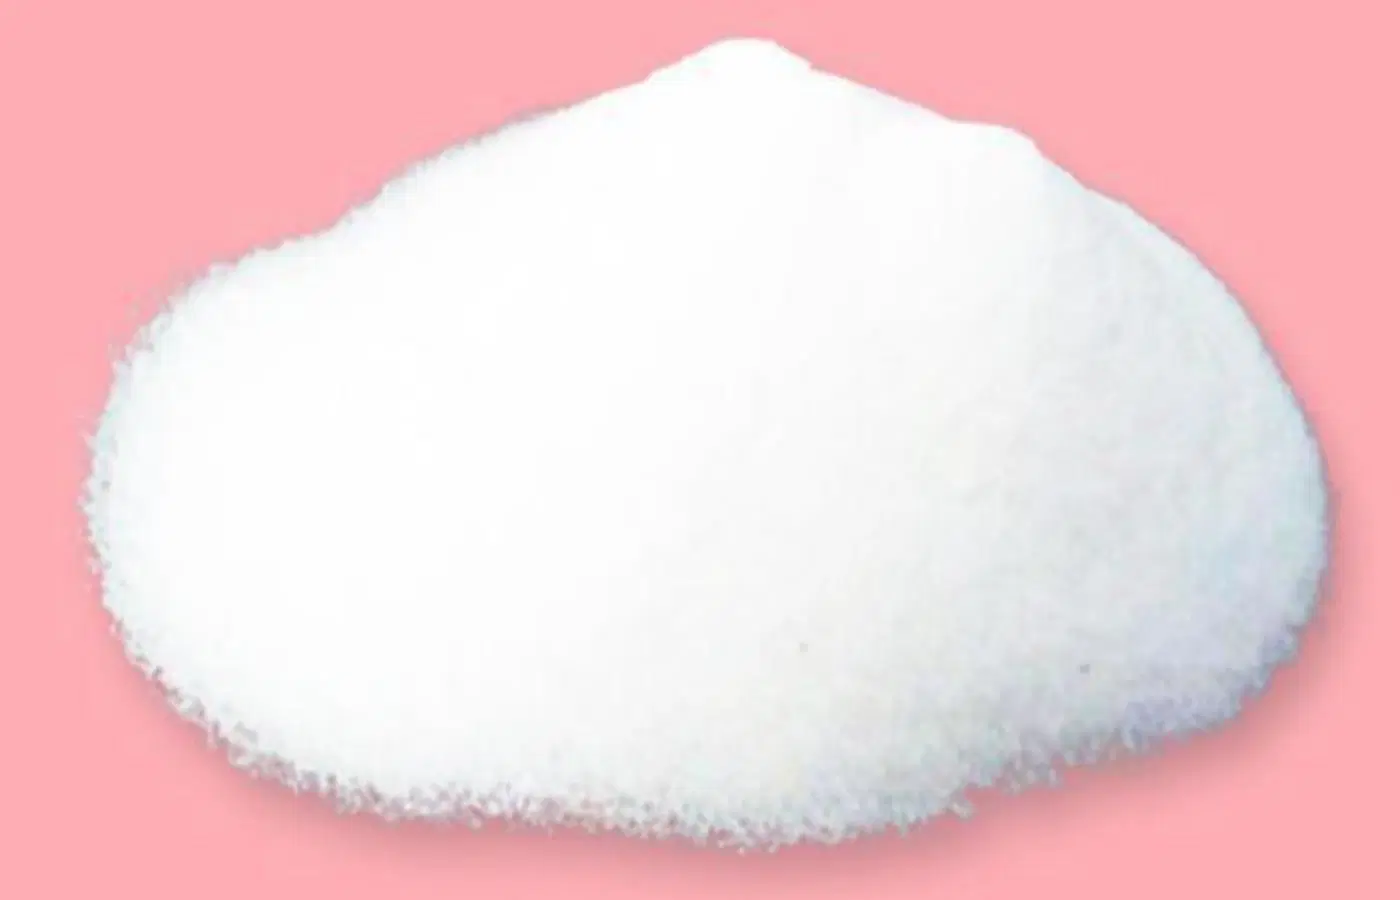 دواء المادة الخام اليومي سكر-إبيكلوروهيدرات كوبلميير درجة نقاء 99% من CAS رقم 26873-85-8